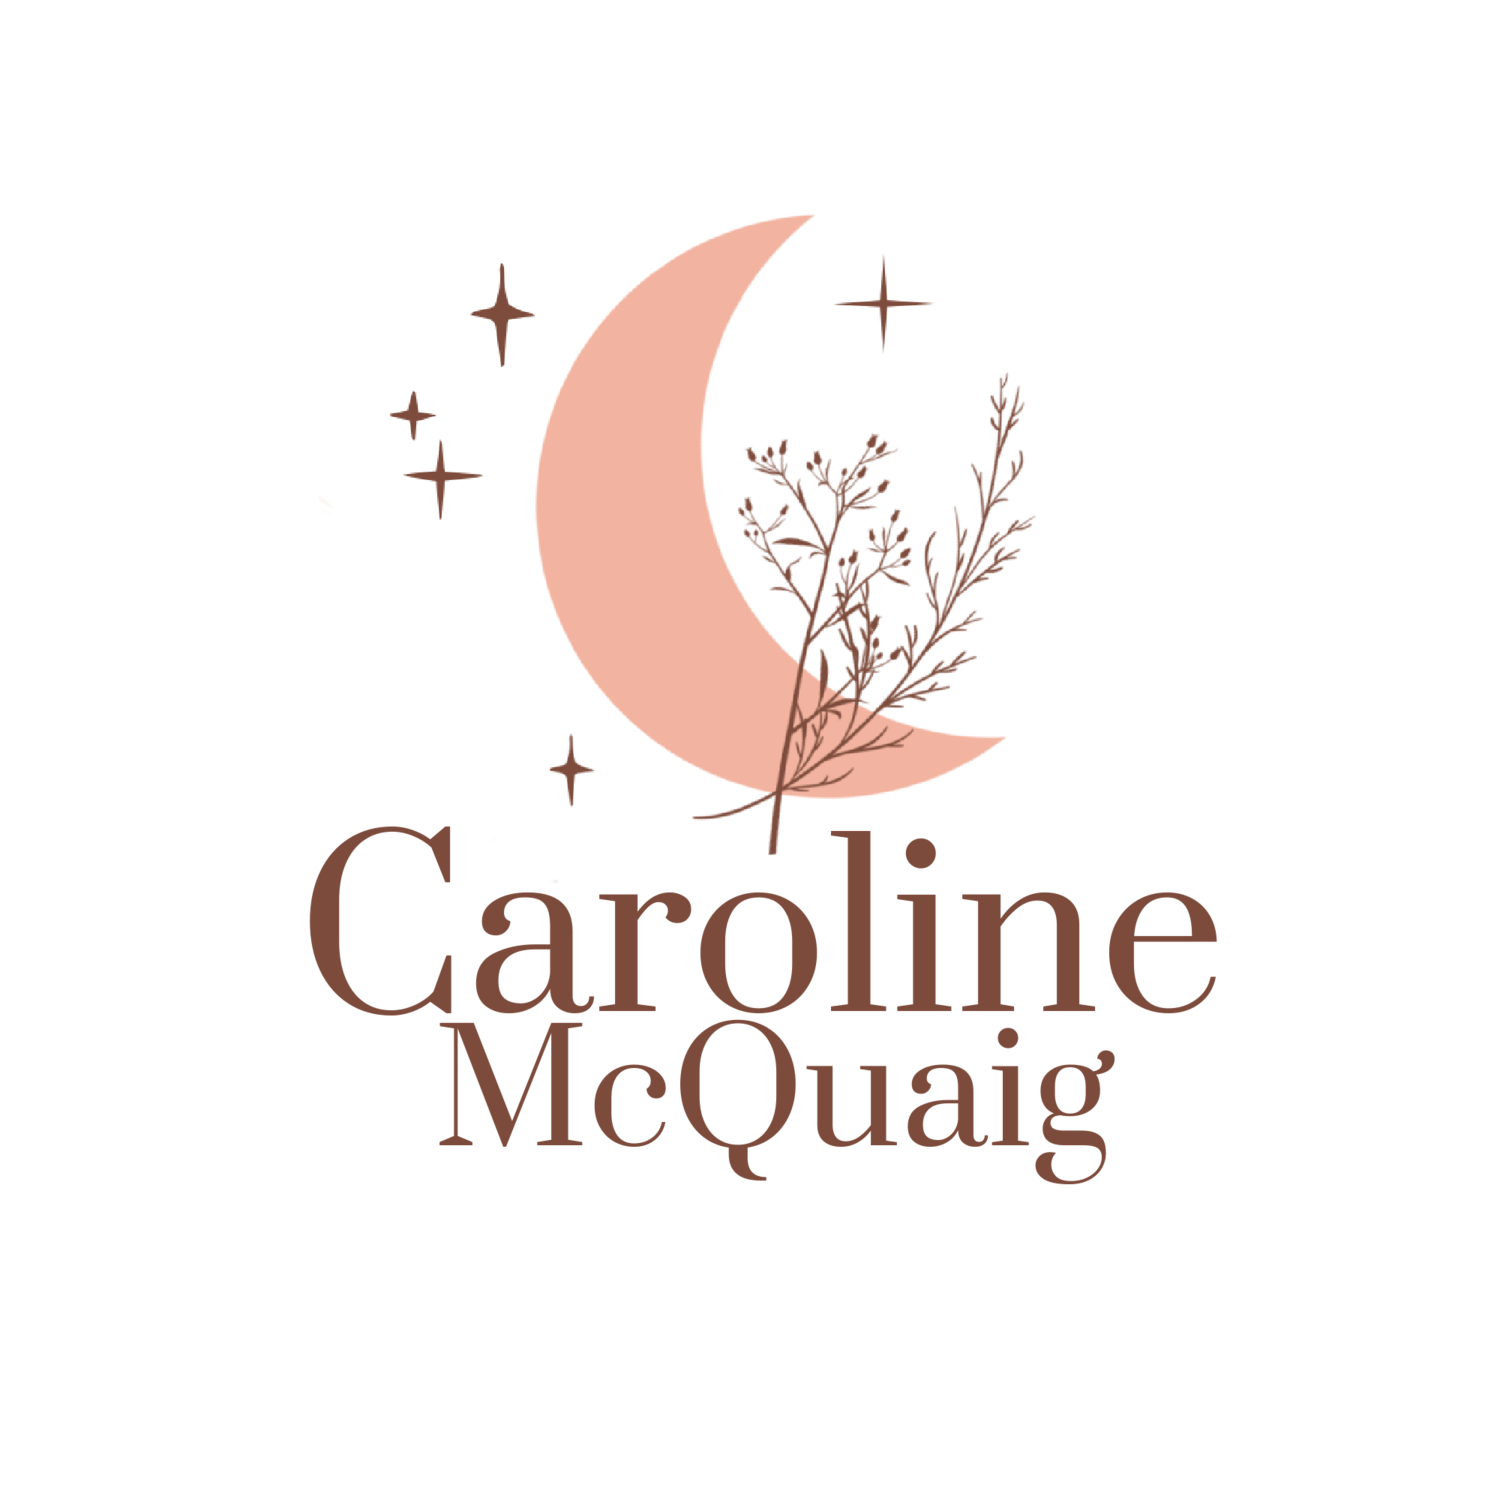 Caroline McQuaig